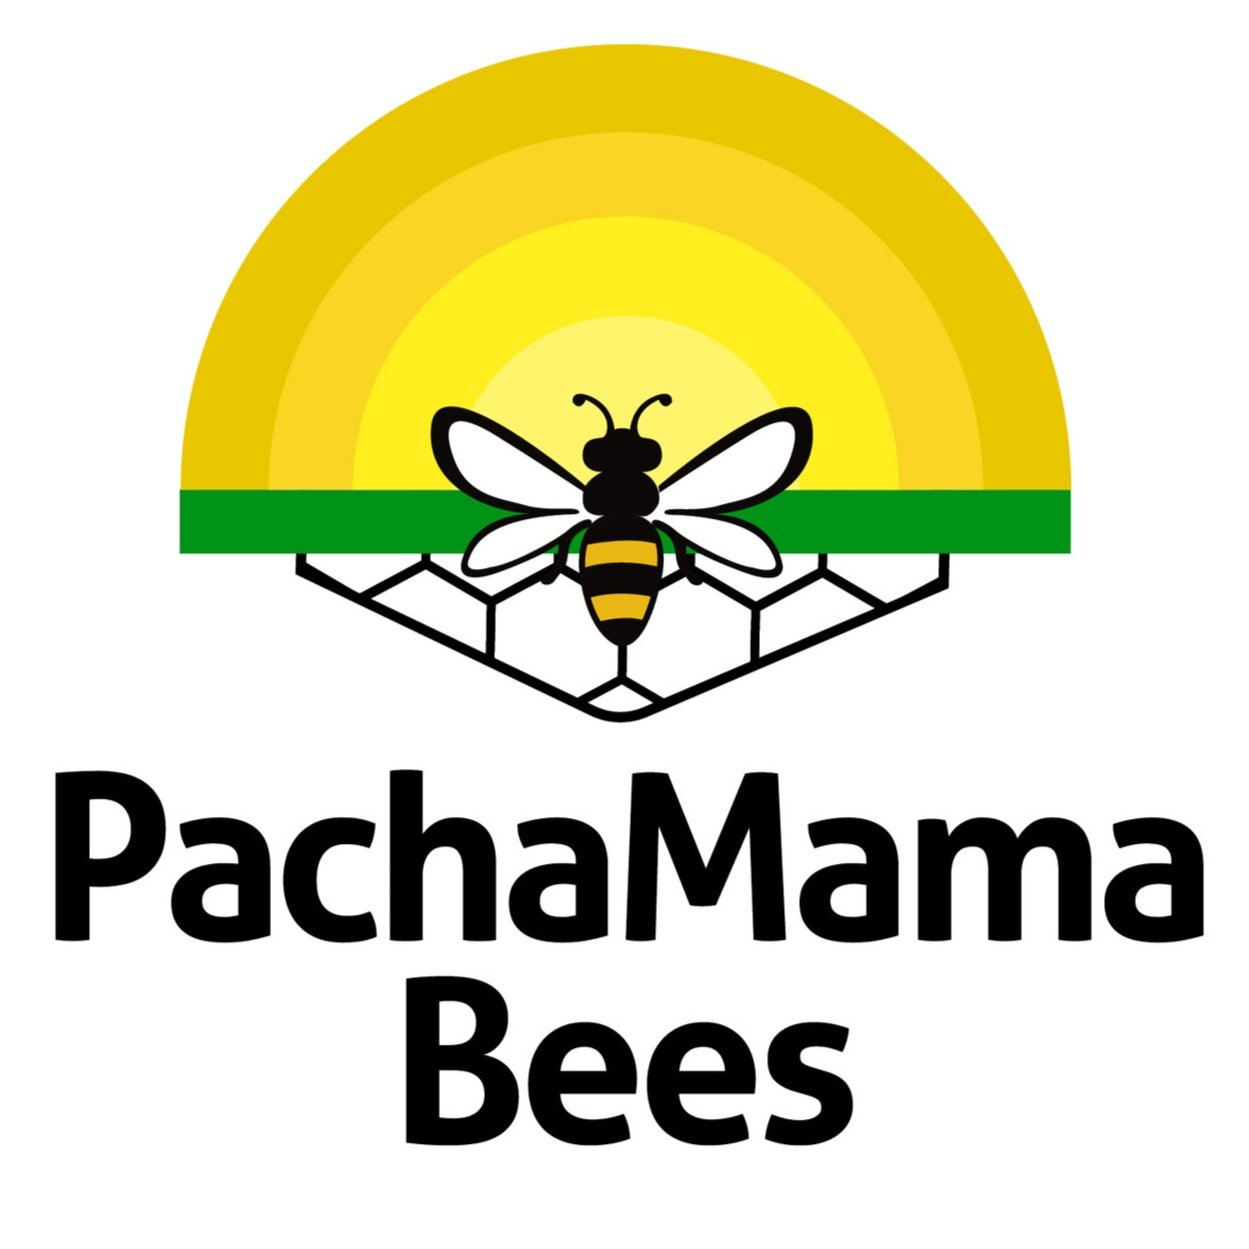 PachaMama Bees